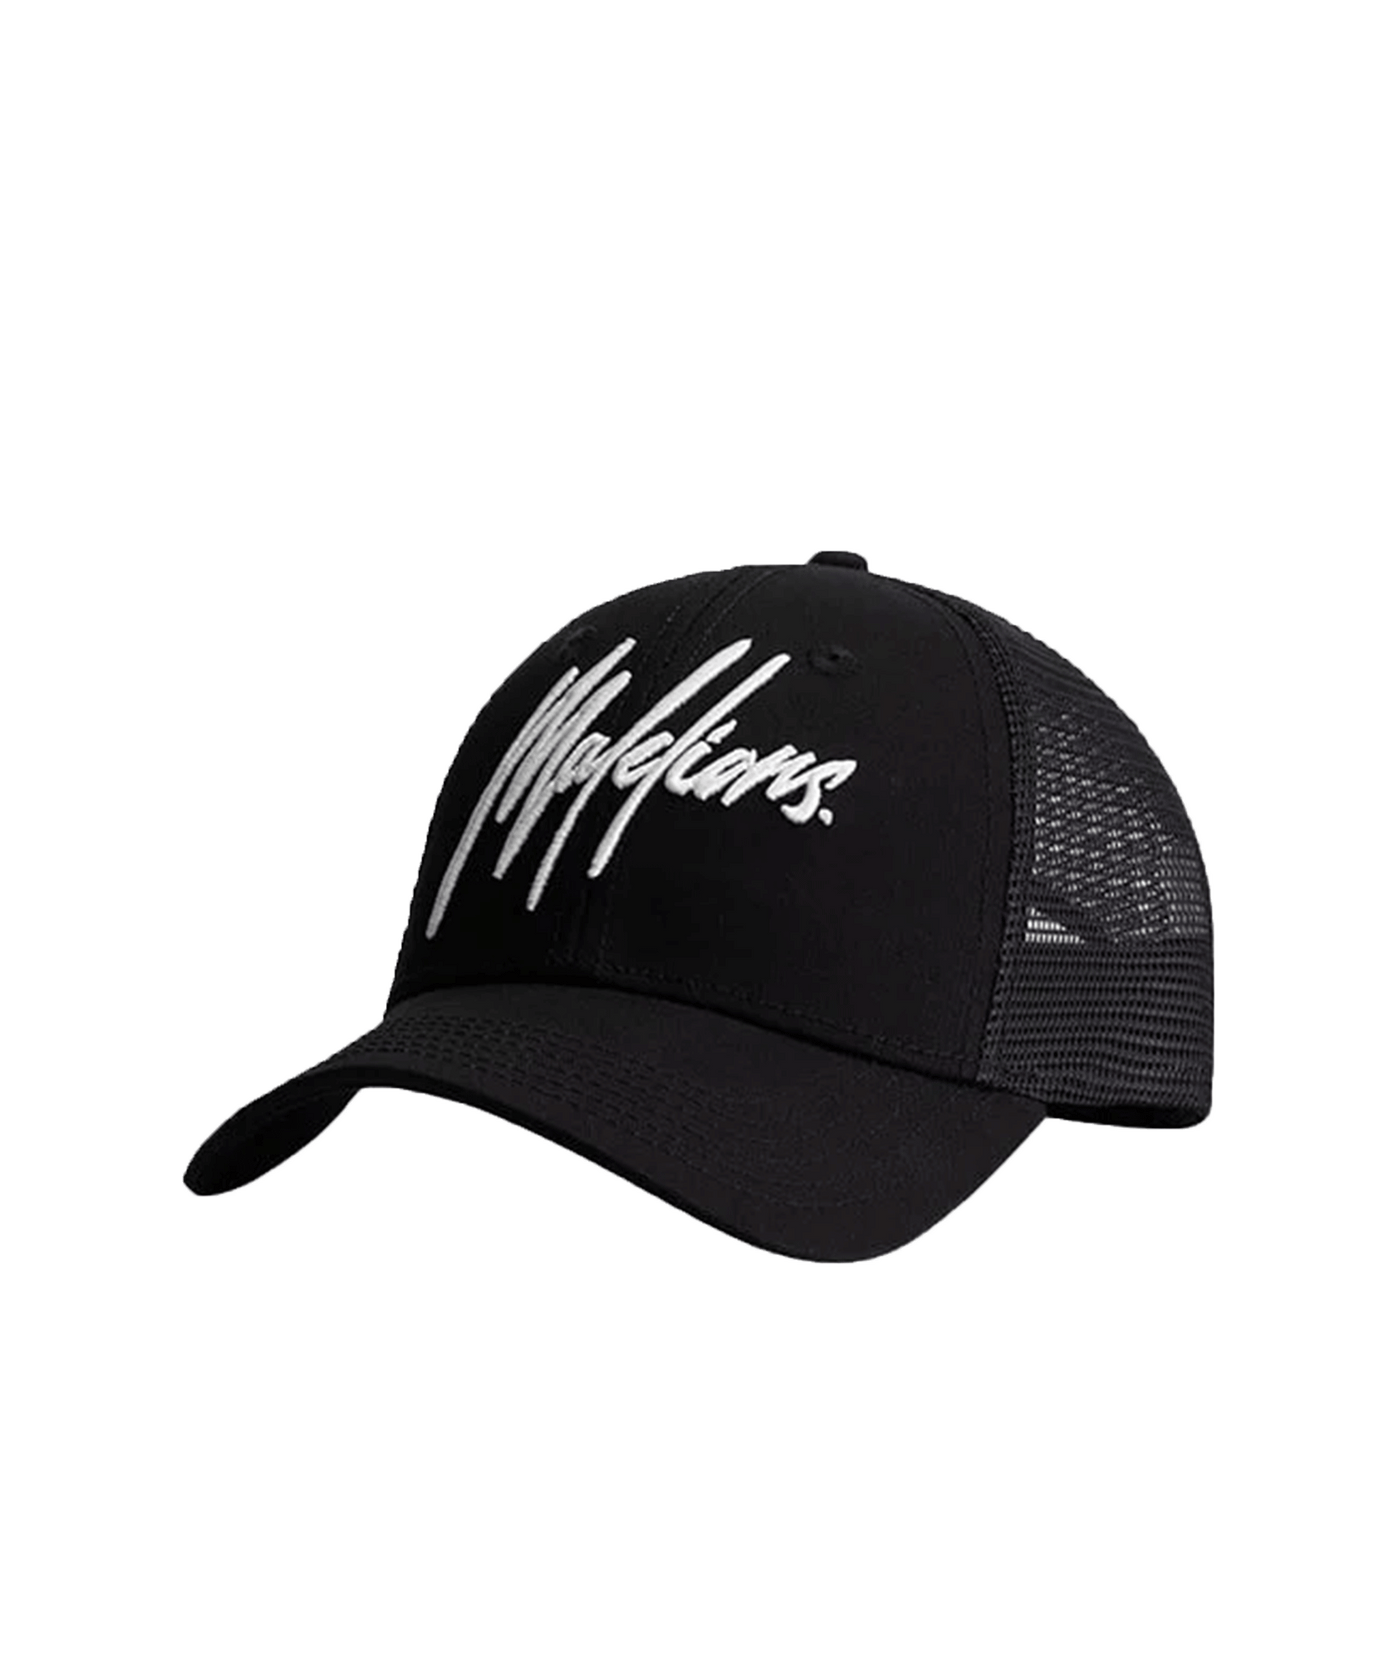 Malelions - Signature Cap - Black